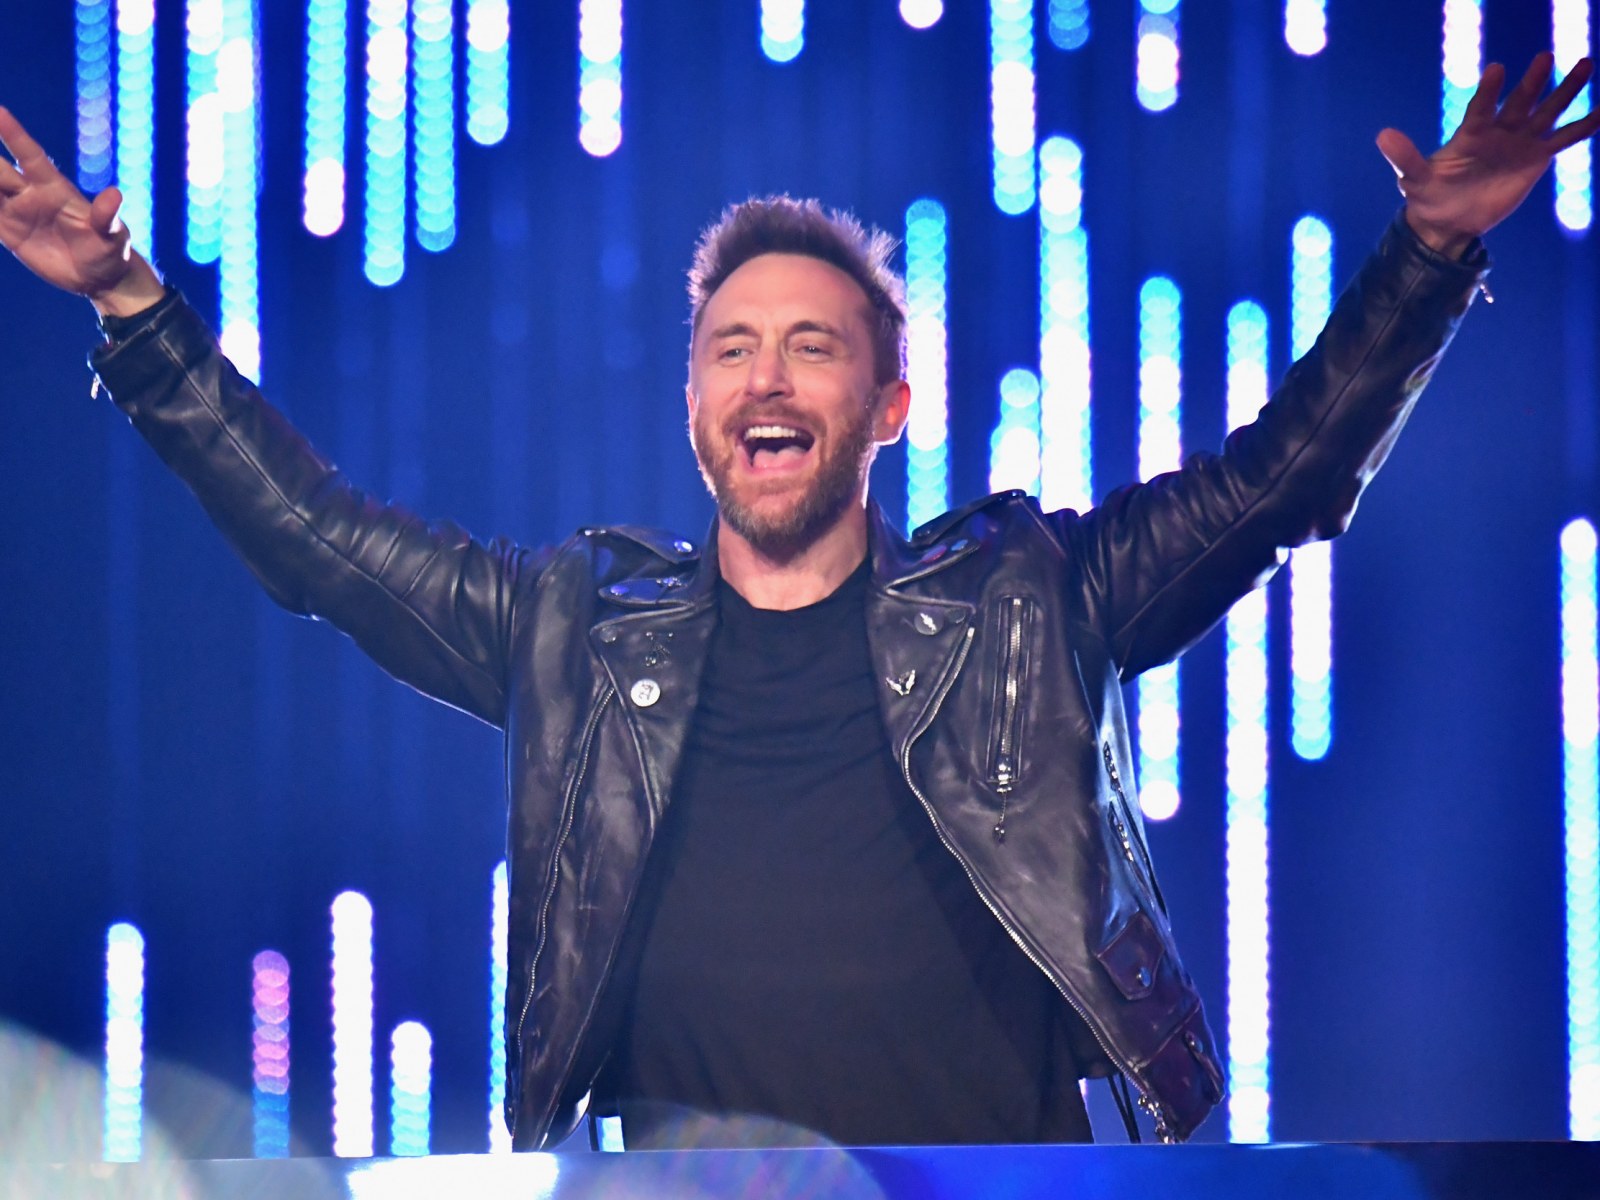 David Guetta utilise l'intelligence artificielle pour imiter la voix d'Eminem en plein concert